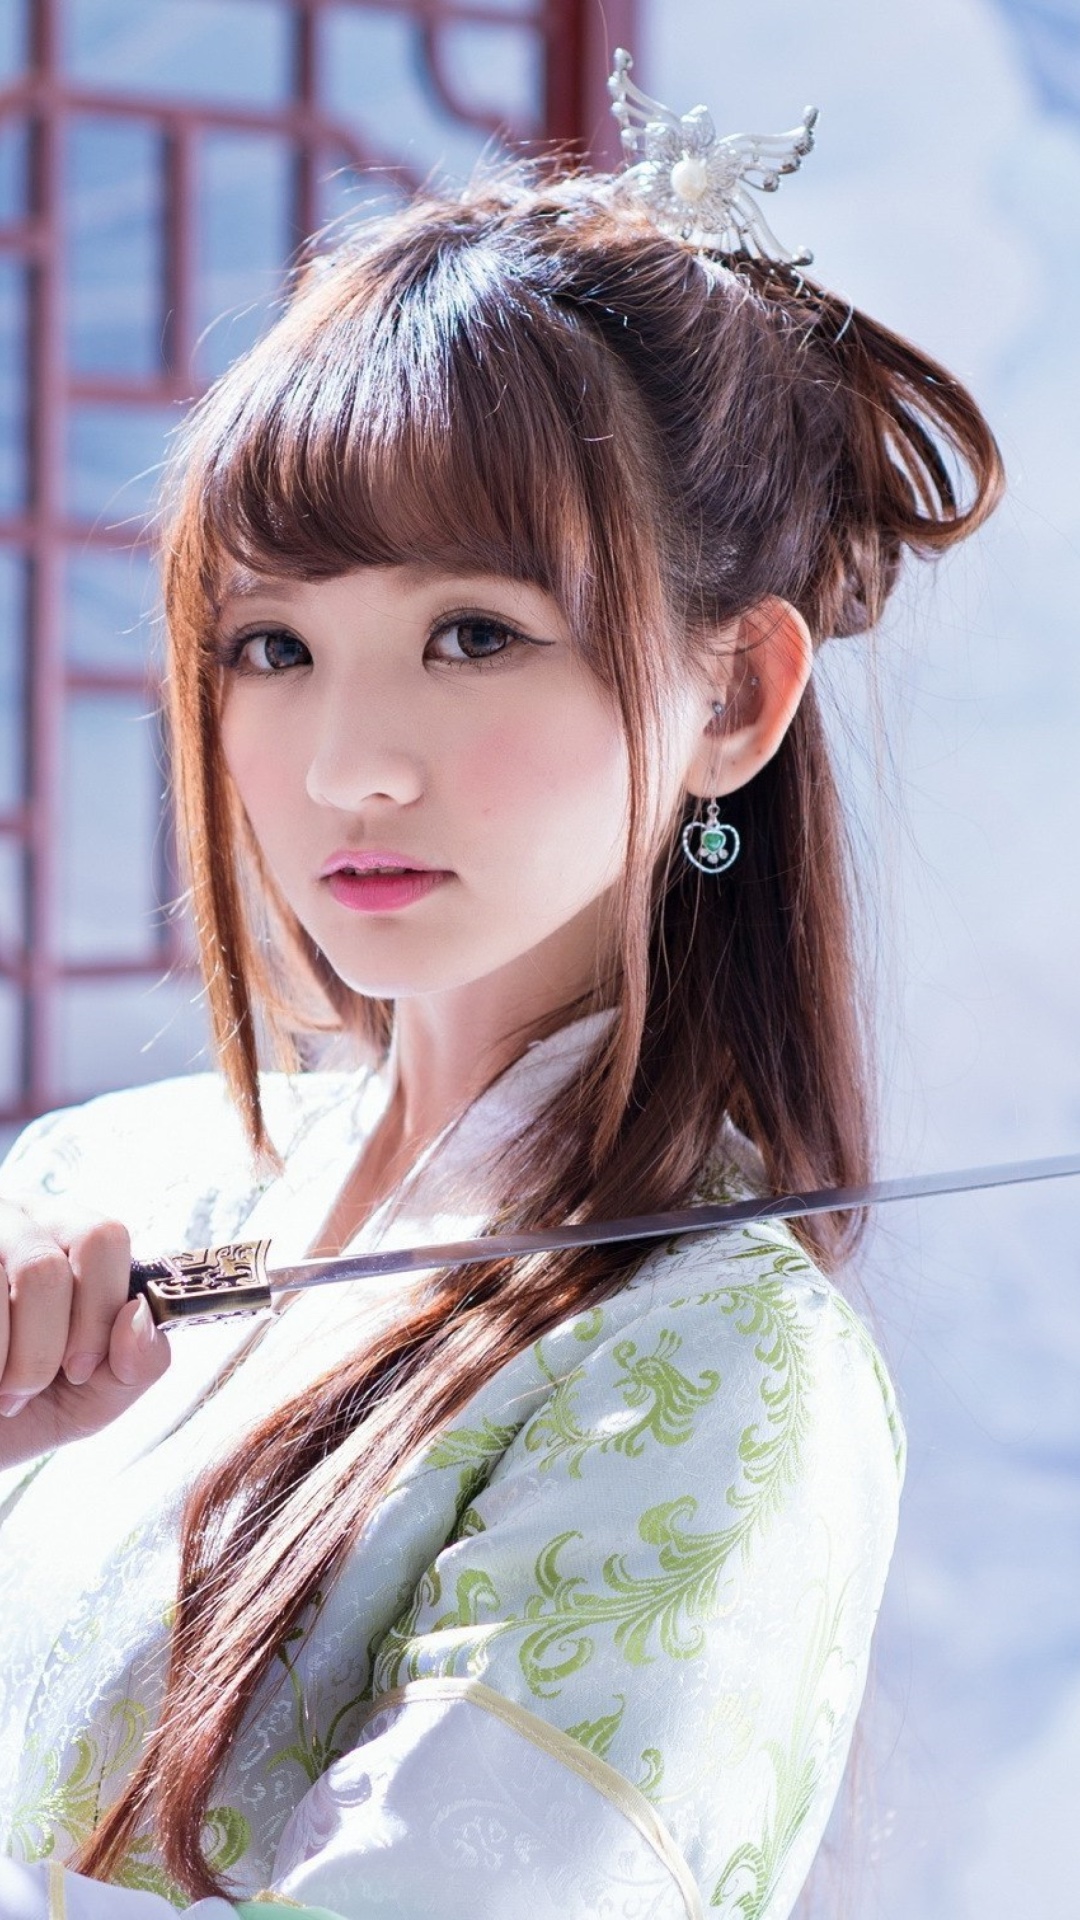 Samurai Girl with Katana wallpaper 1080x1920